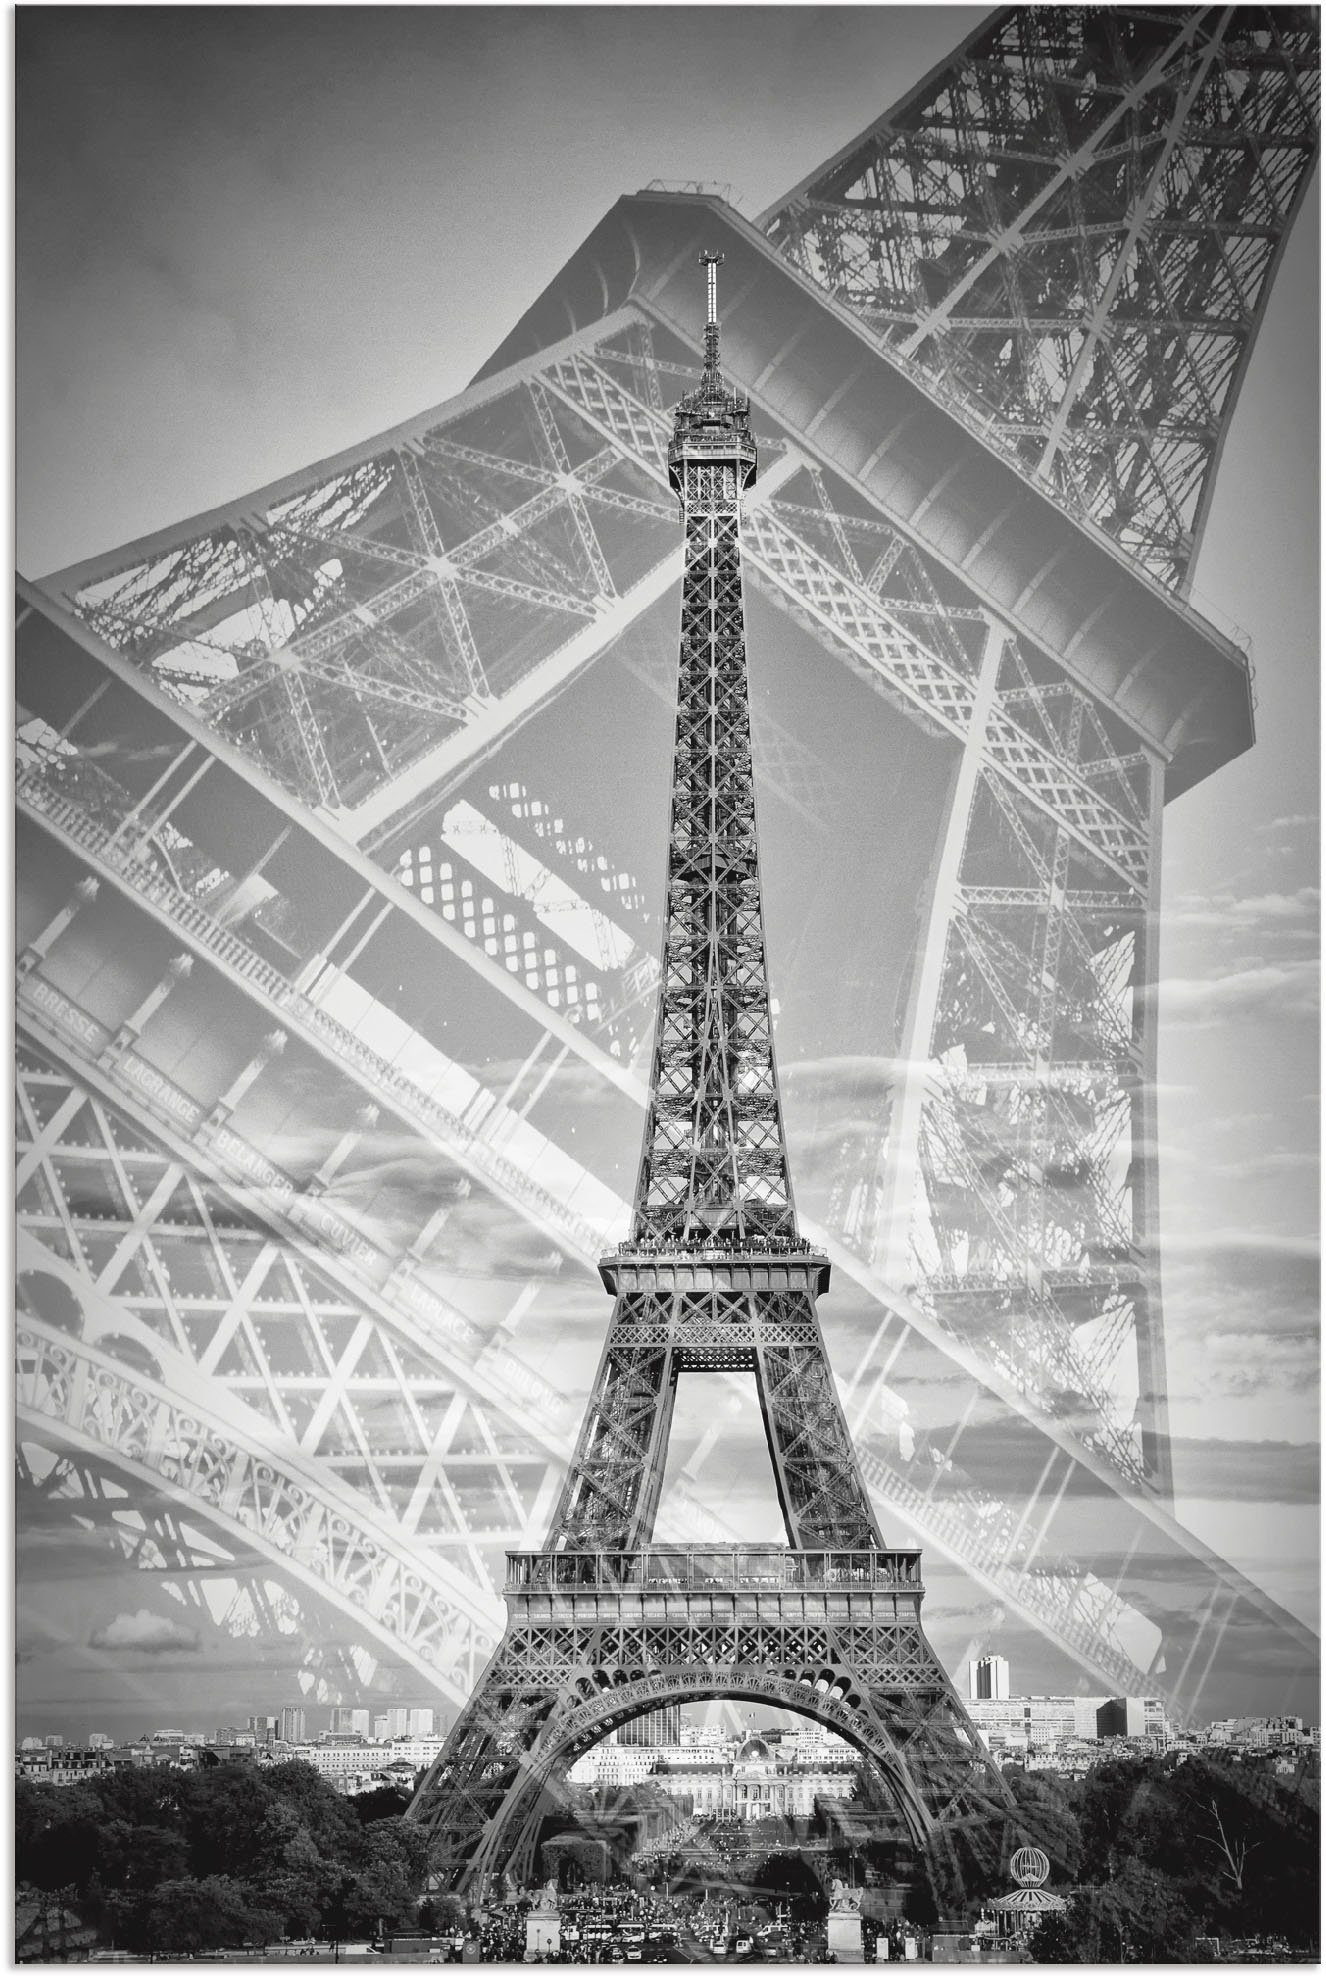 Artland Artprint De dubbele Eiffeltoren II in vele afmetingen & productsoorten - artprint van aluminium / artprint voor buiten, artprint op linnen, poster, muursticker / wandfolie